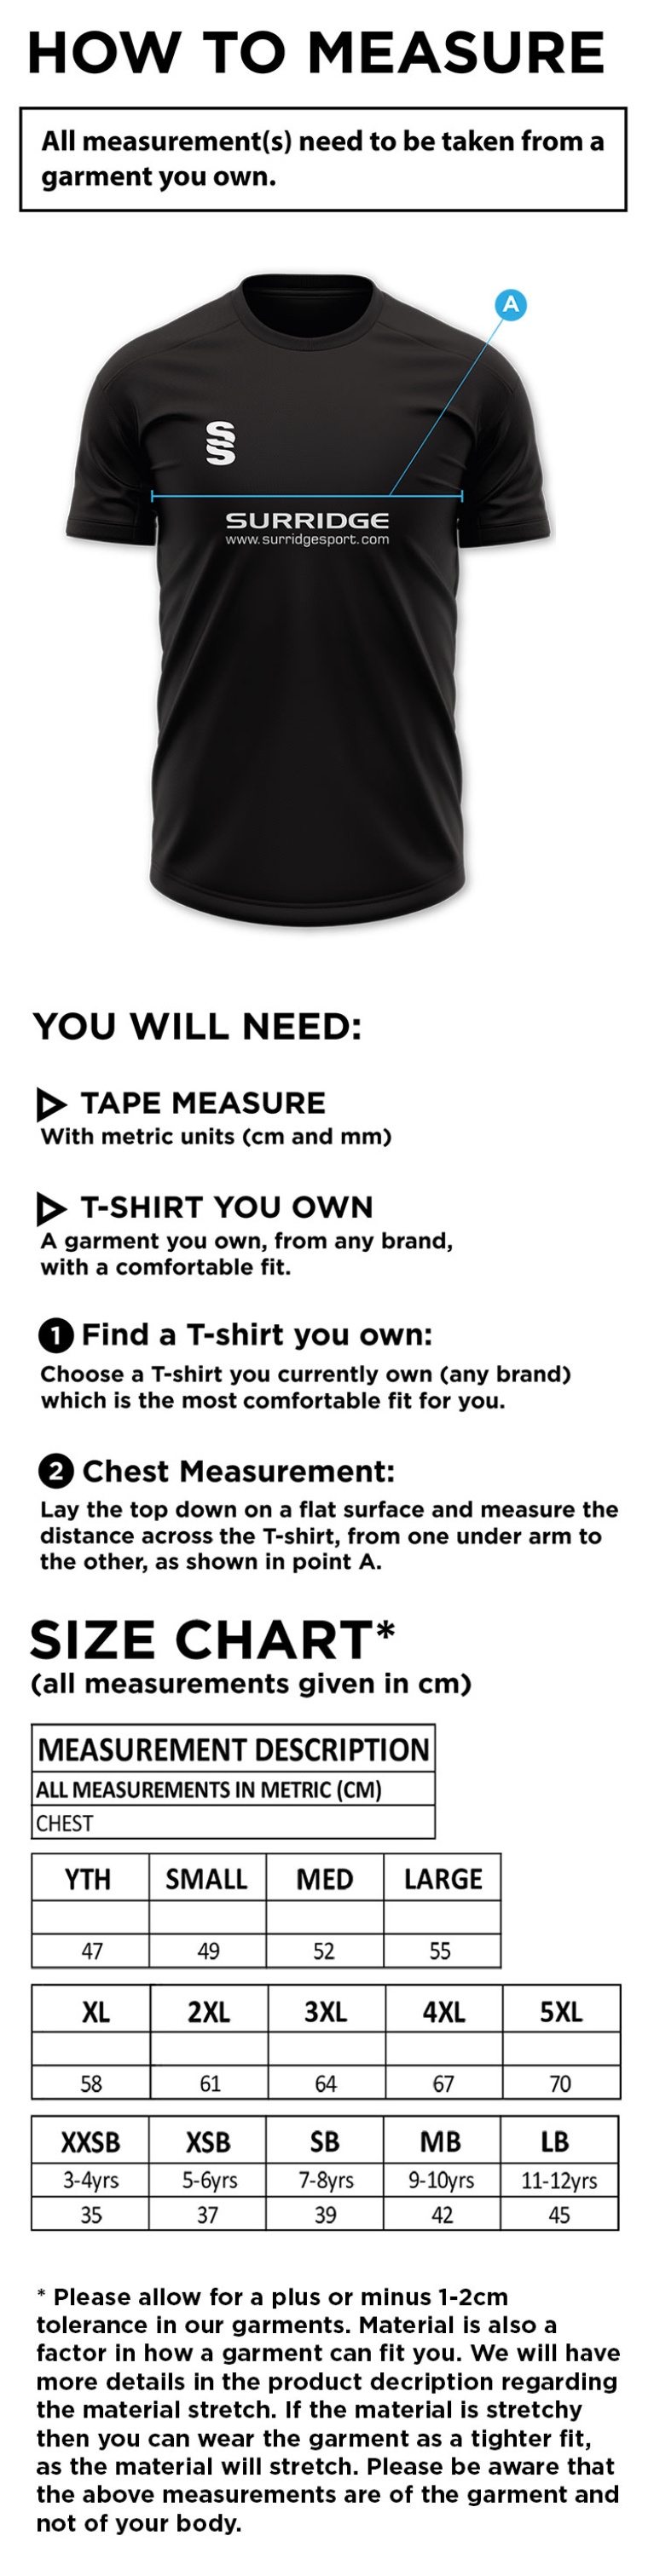 HSBC - Dual Training Shirt - Size Guide